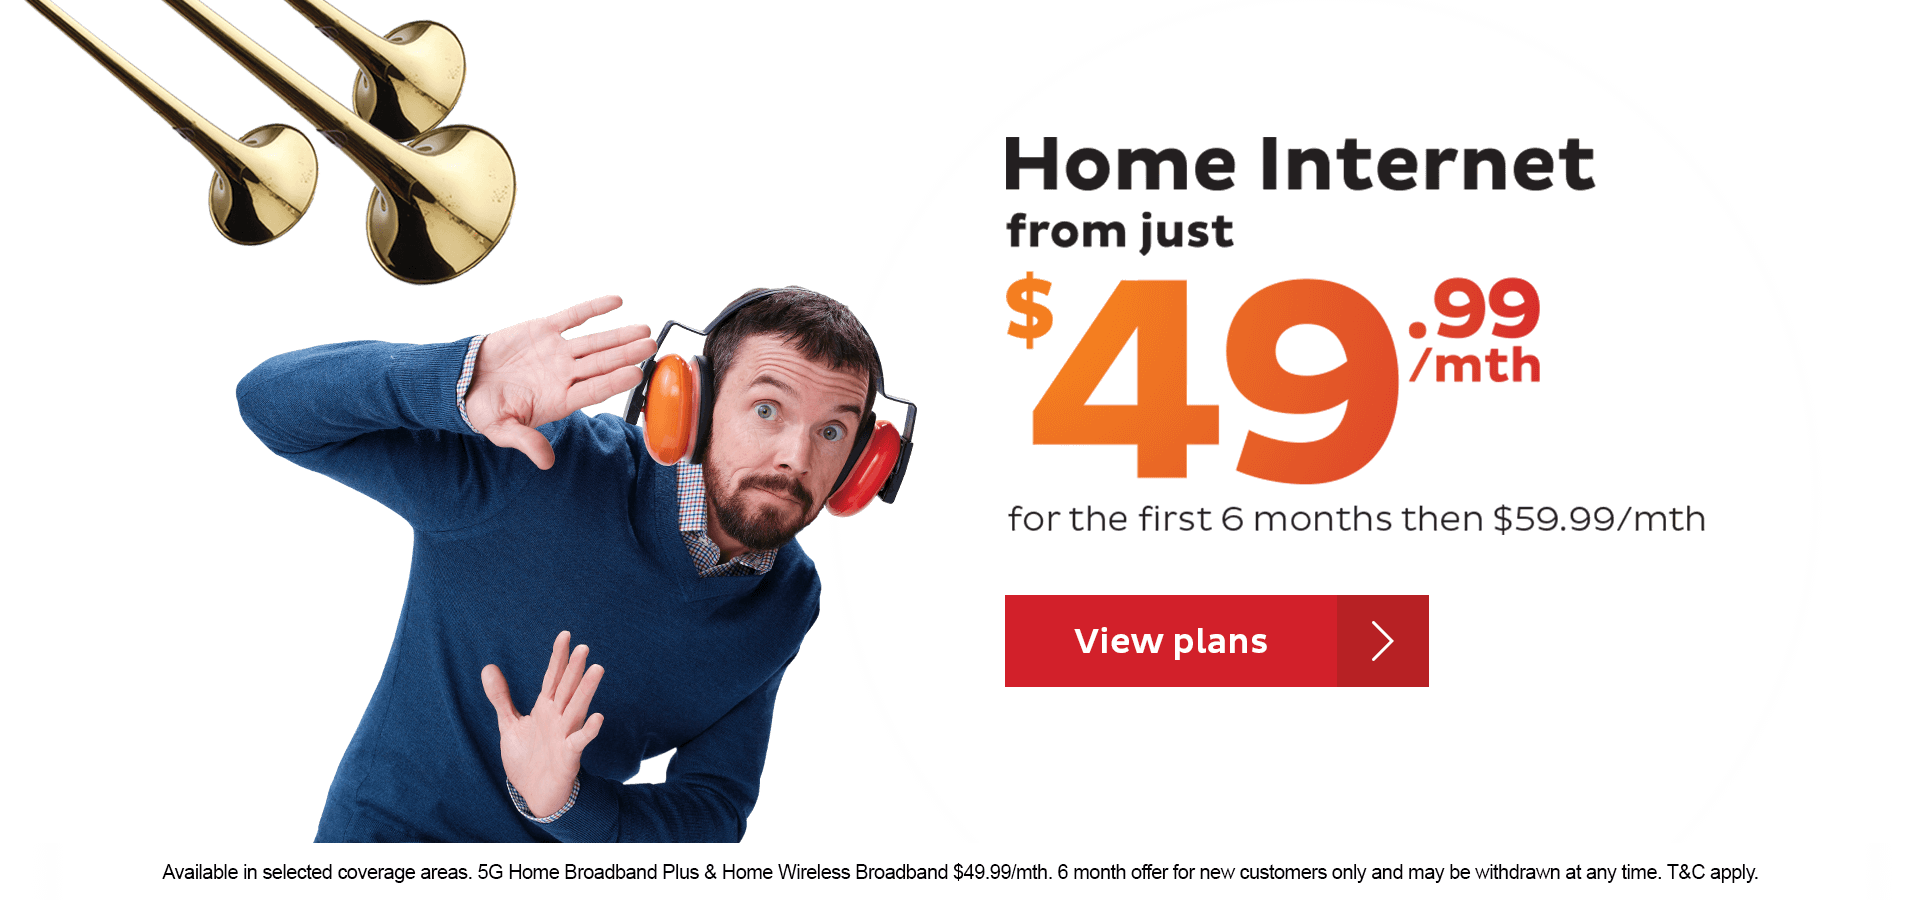 Big Value Home Internet